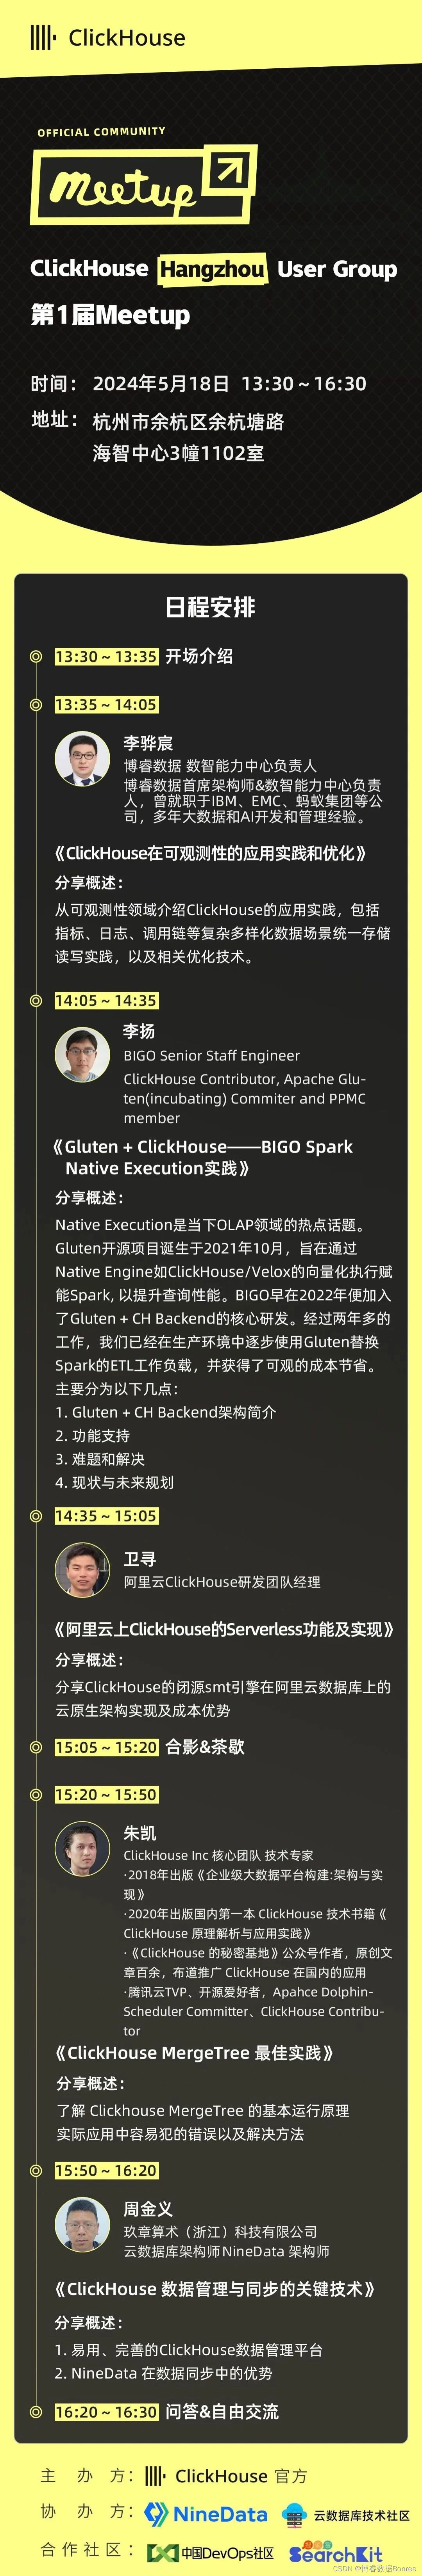 博睿数据将出席ClickHouse Hangzhou User Group第1届 Meetup